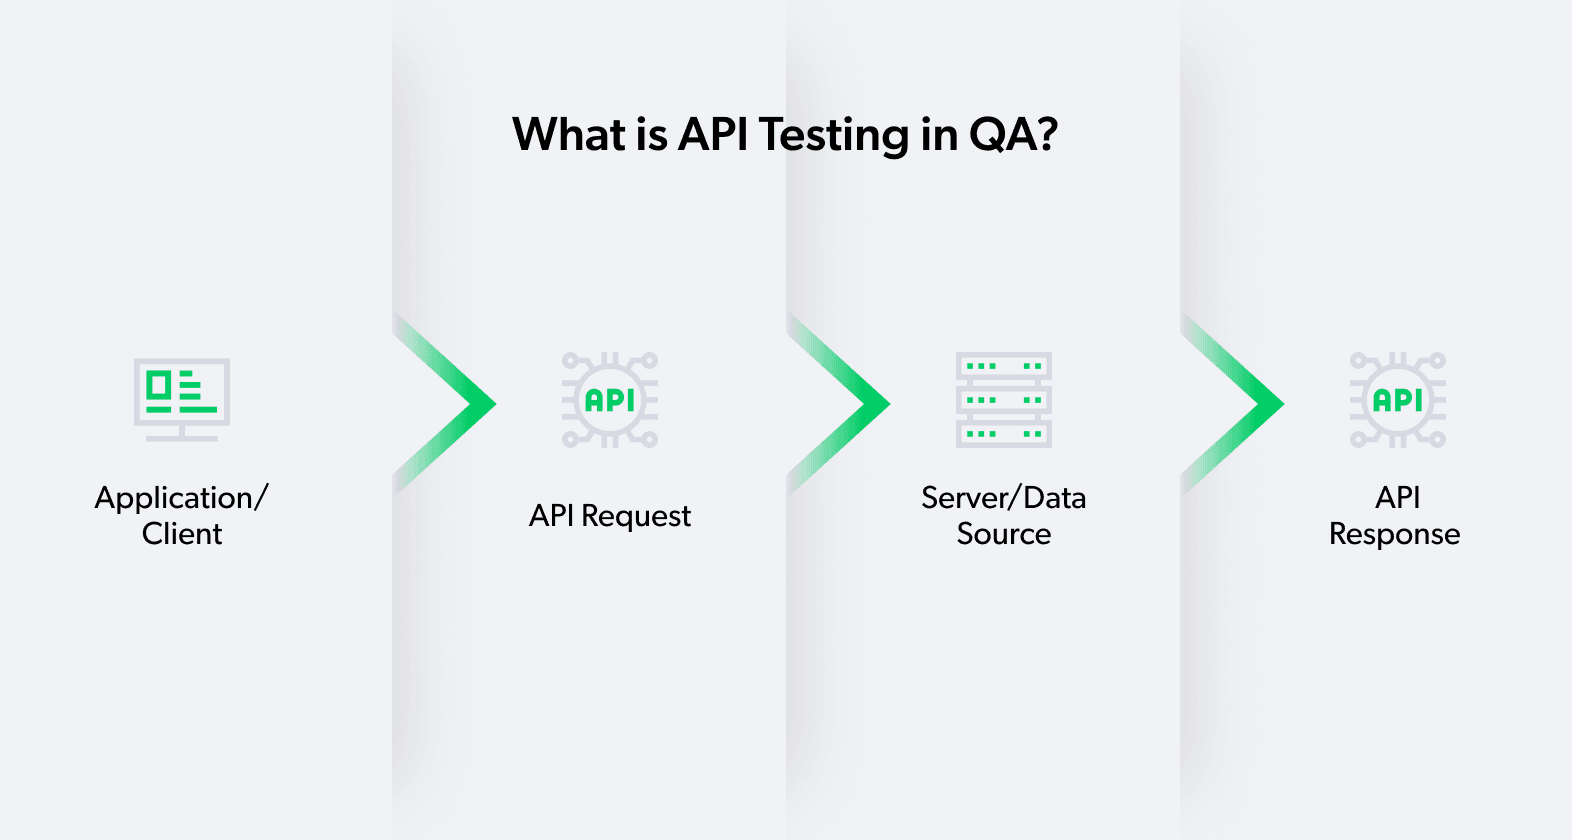 API testing in QA